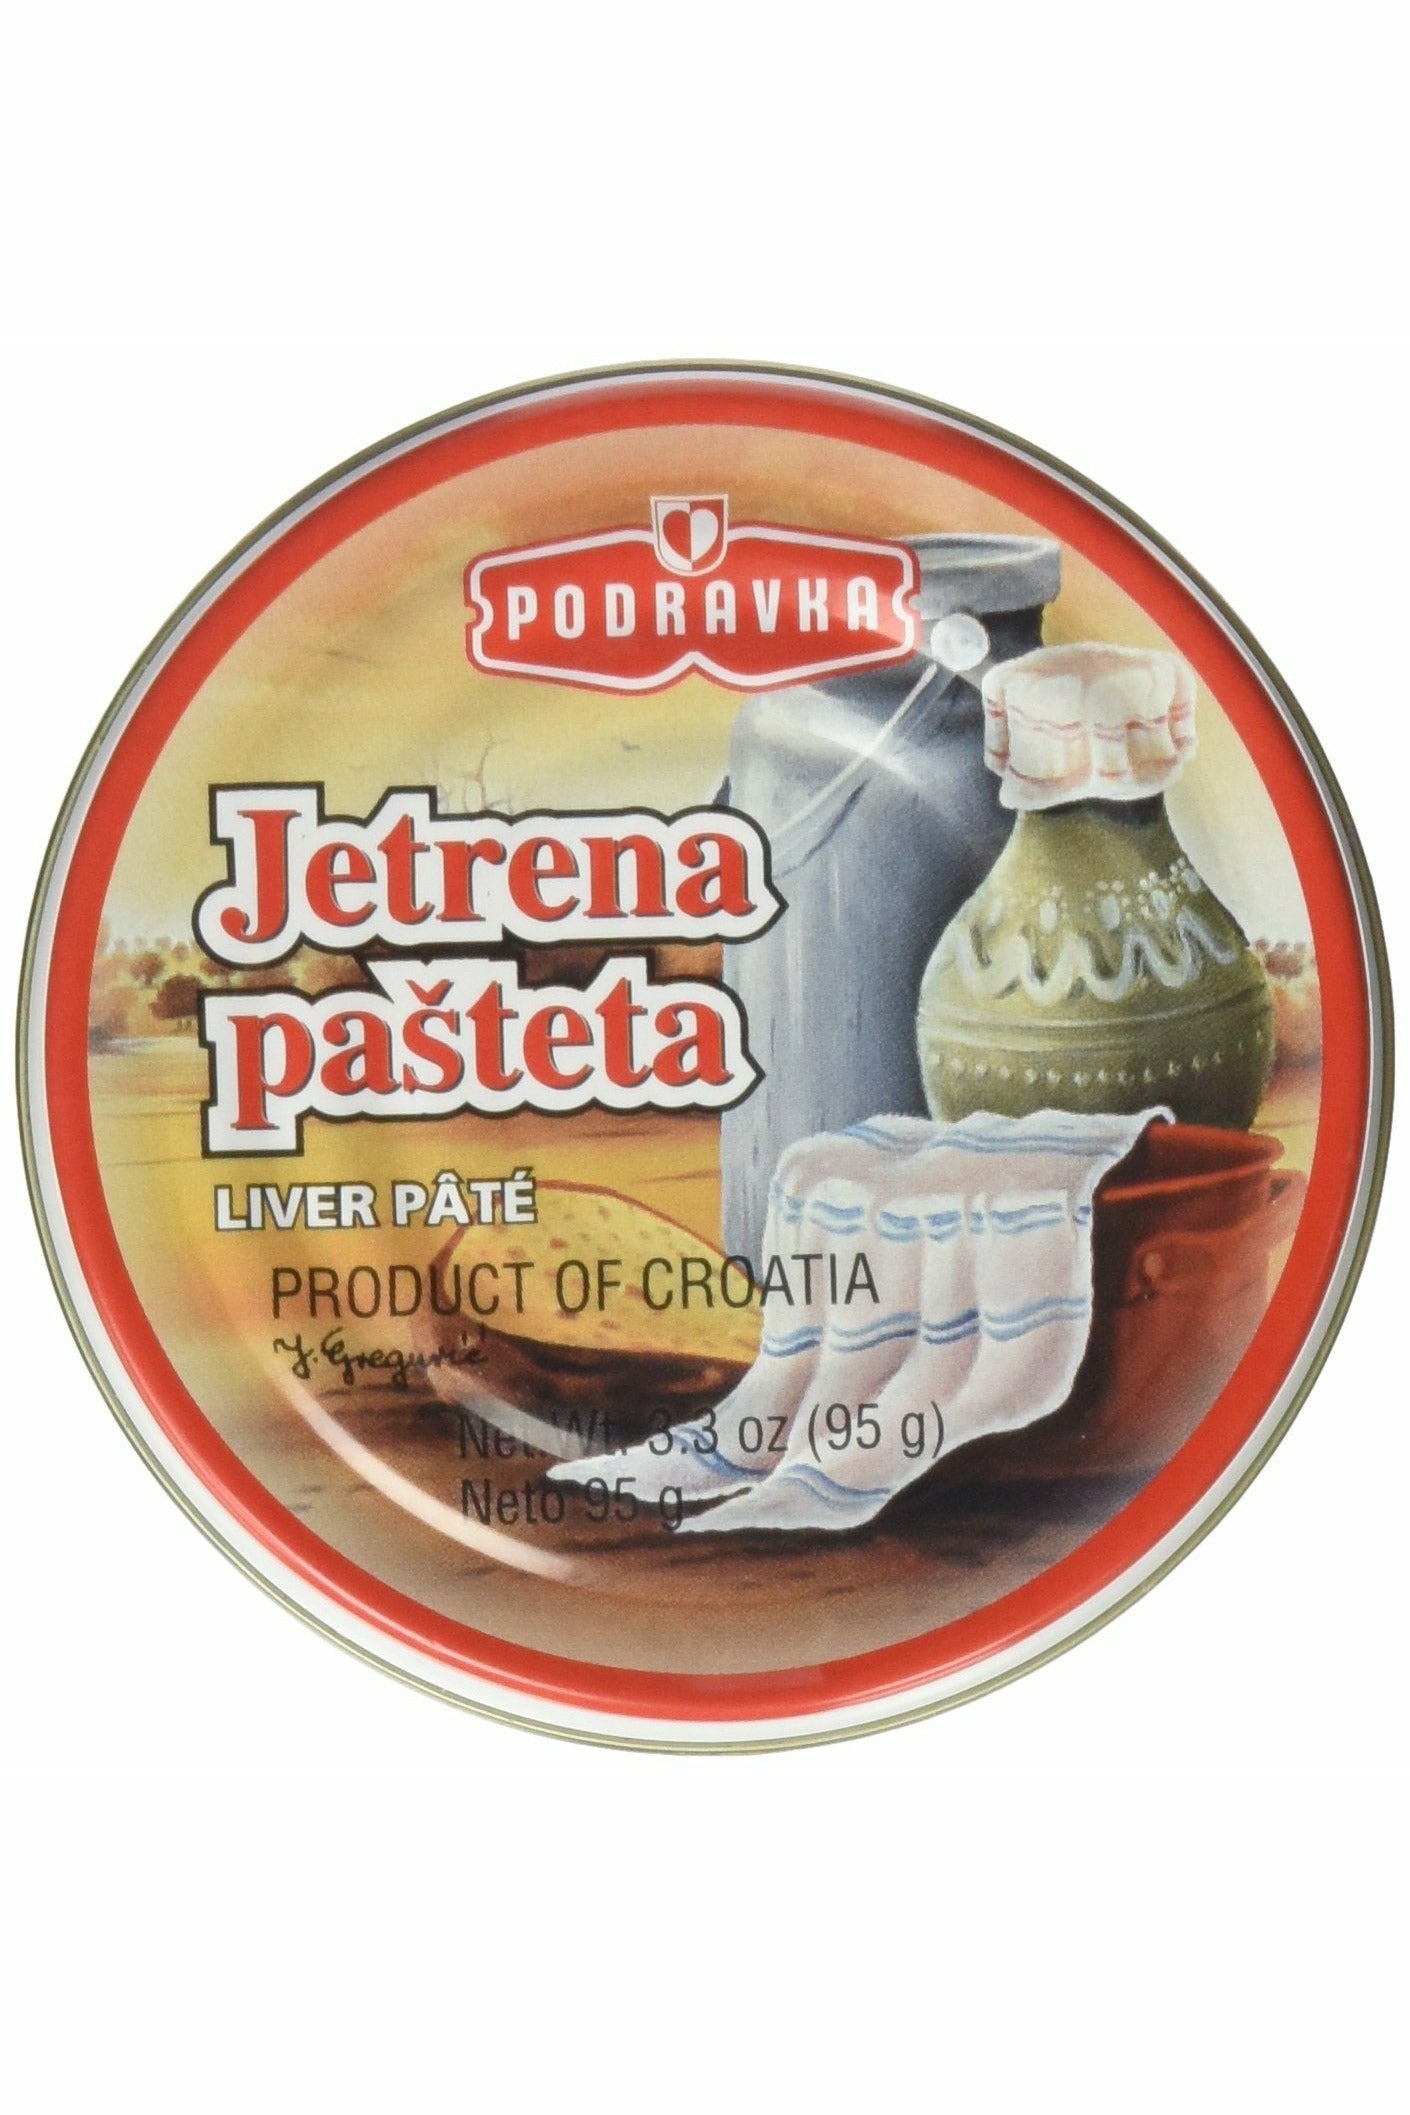 Liver Pate Podravka - Jetrena Pasteta - 95g